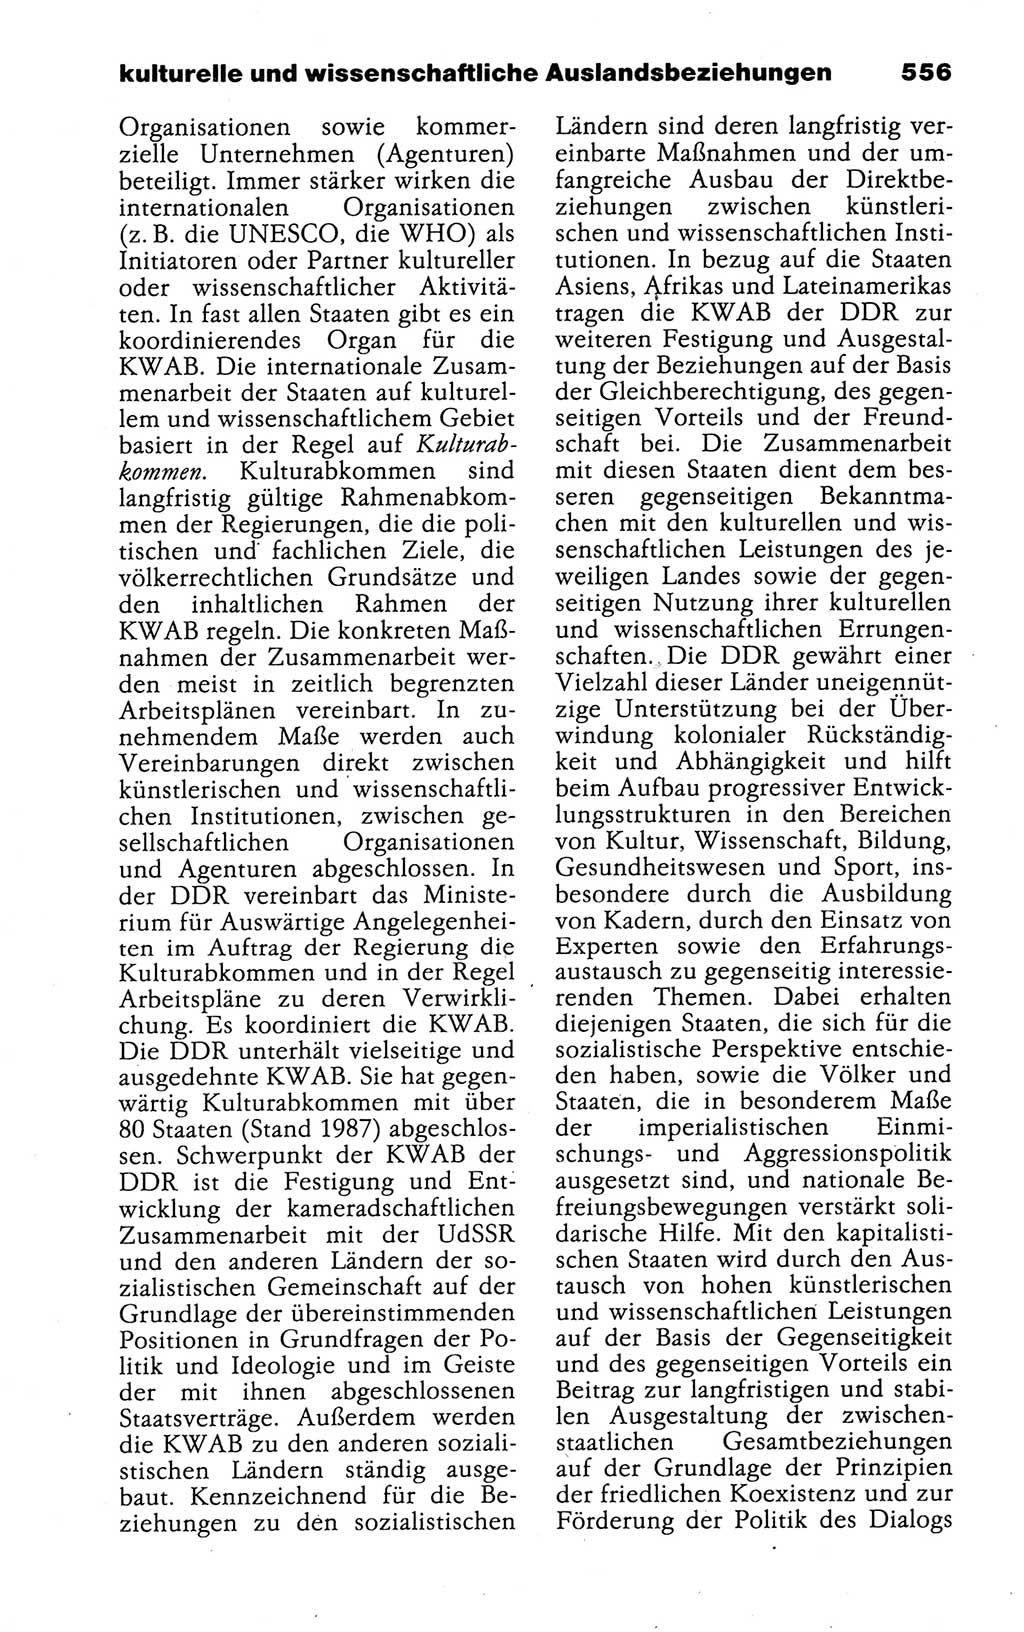 Kleines politisches Wörterbuch [Deutsche Demokratische Republik (DDR)] 1988, Seite 556 (Kl. pol. Wb. DDR 1988, S. 556)